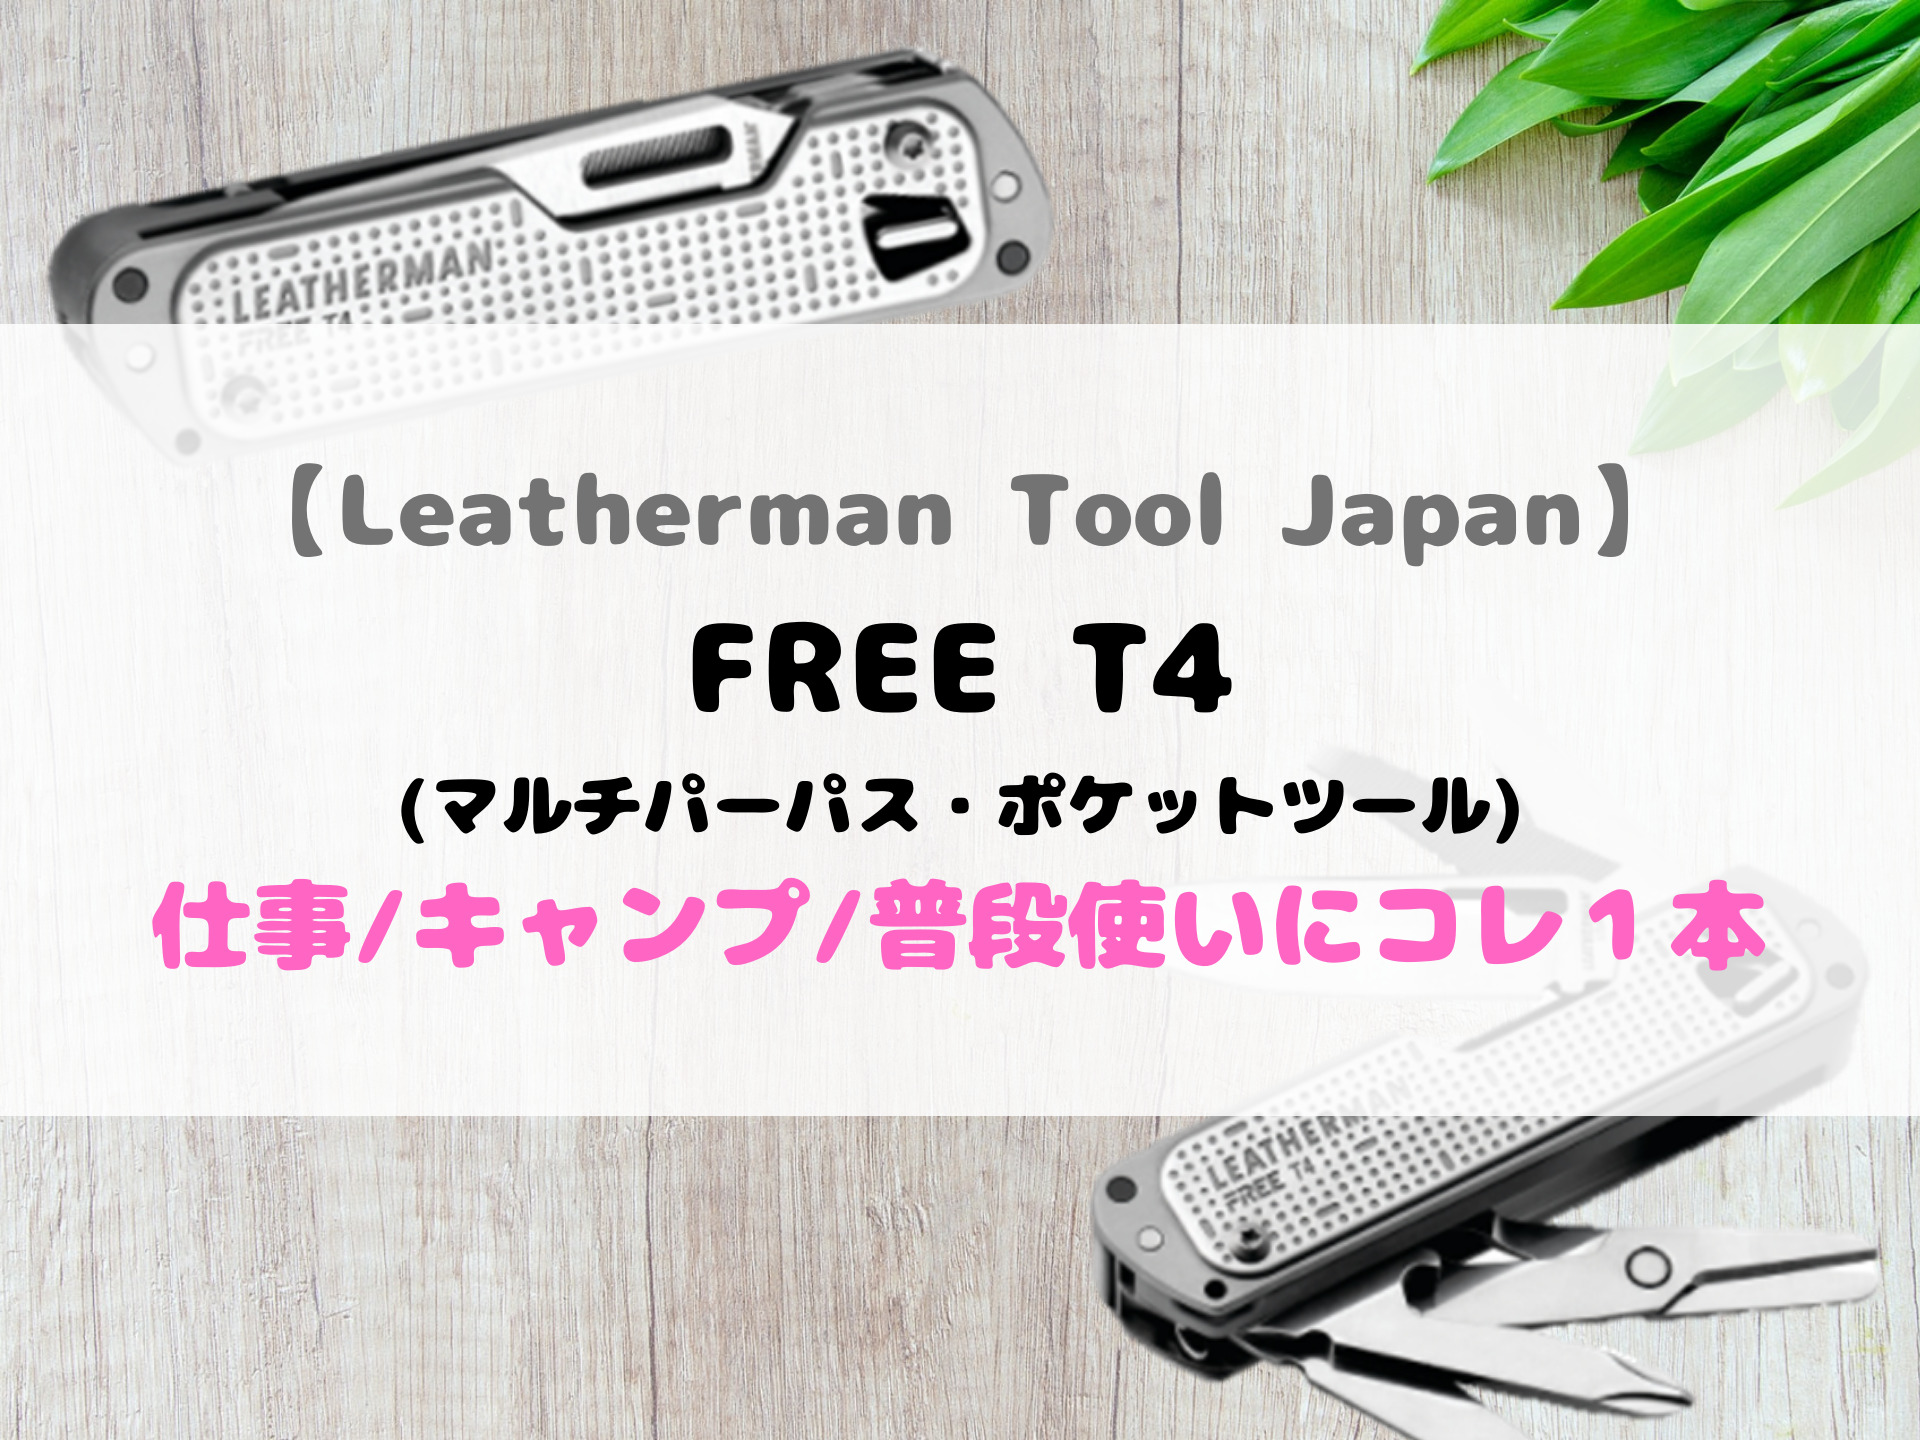 買取 比較 LEATHERMANレザーマン マルチツール FREE T4フリー T4 日本